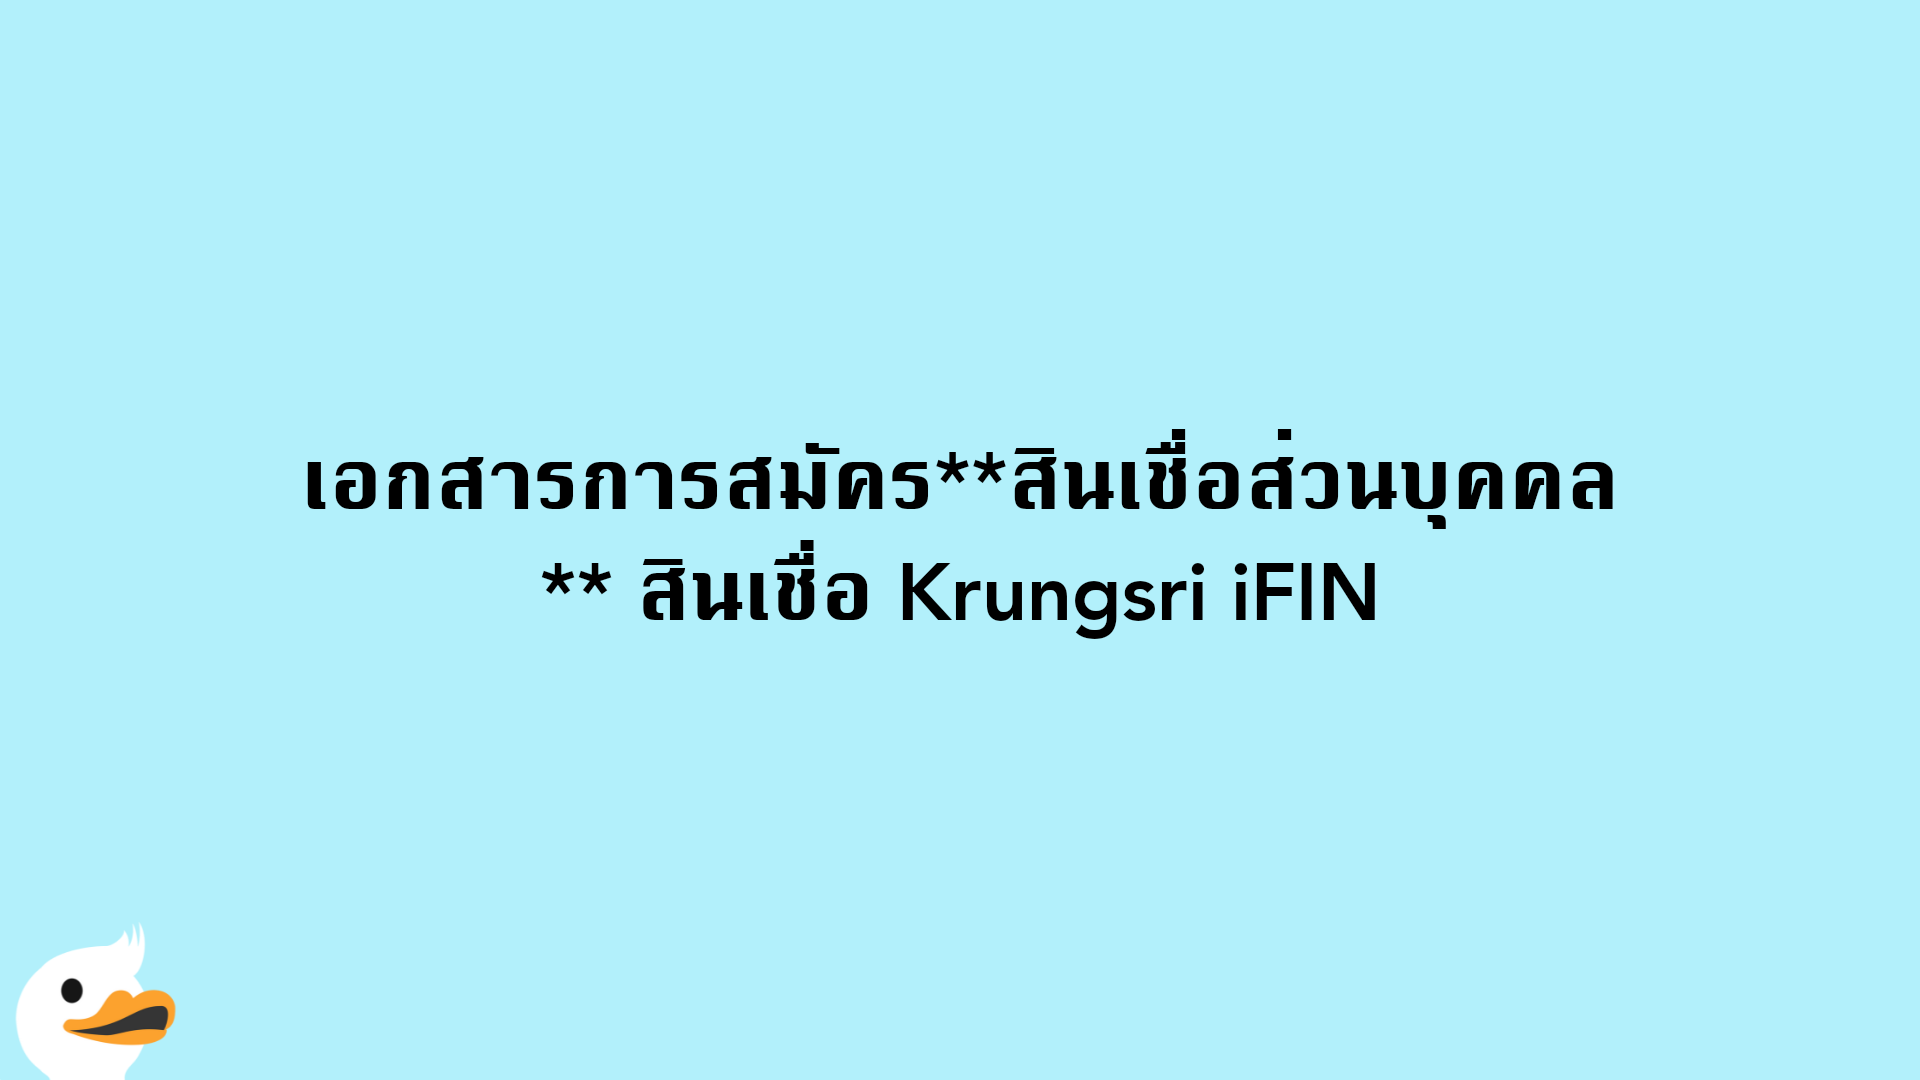 เอกสารการสมัครสินเชื่อส่วนบุคคล สินเชื่อ Krungsri iFIN